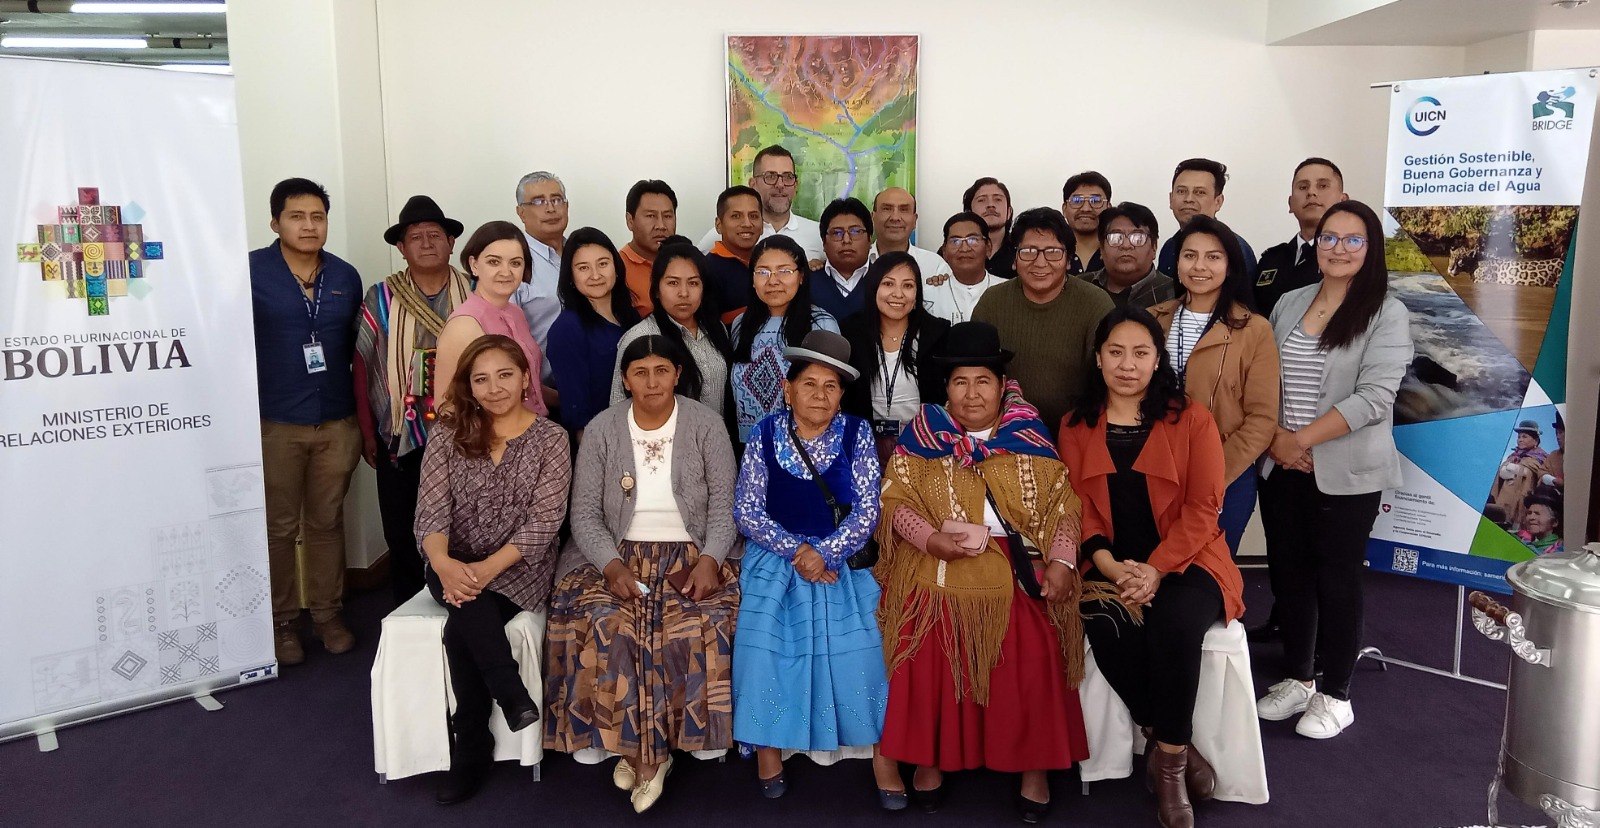 Curso “Gestión Integral, Gobernanza y Diplomacia del Agua” en Bolivia